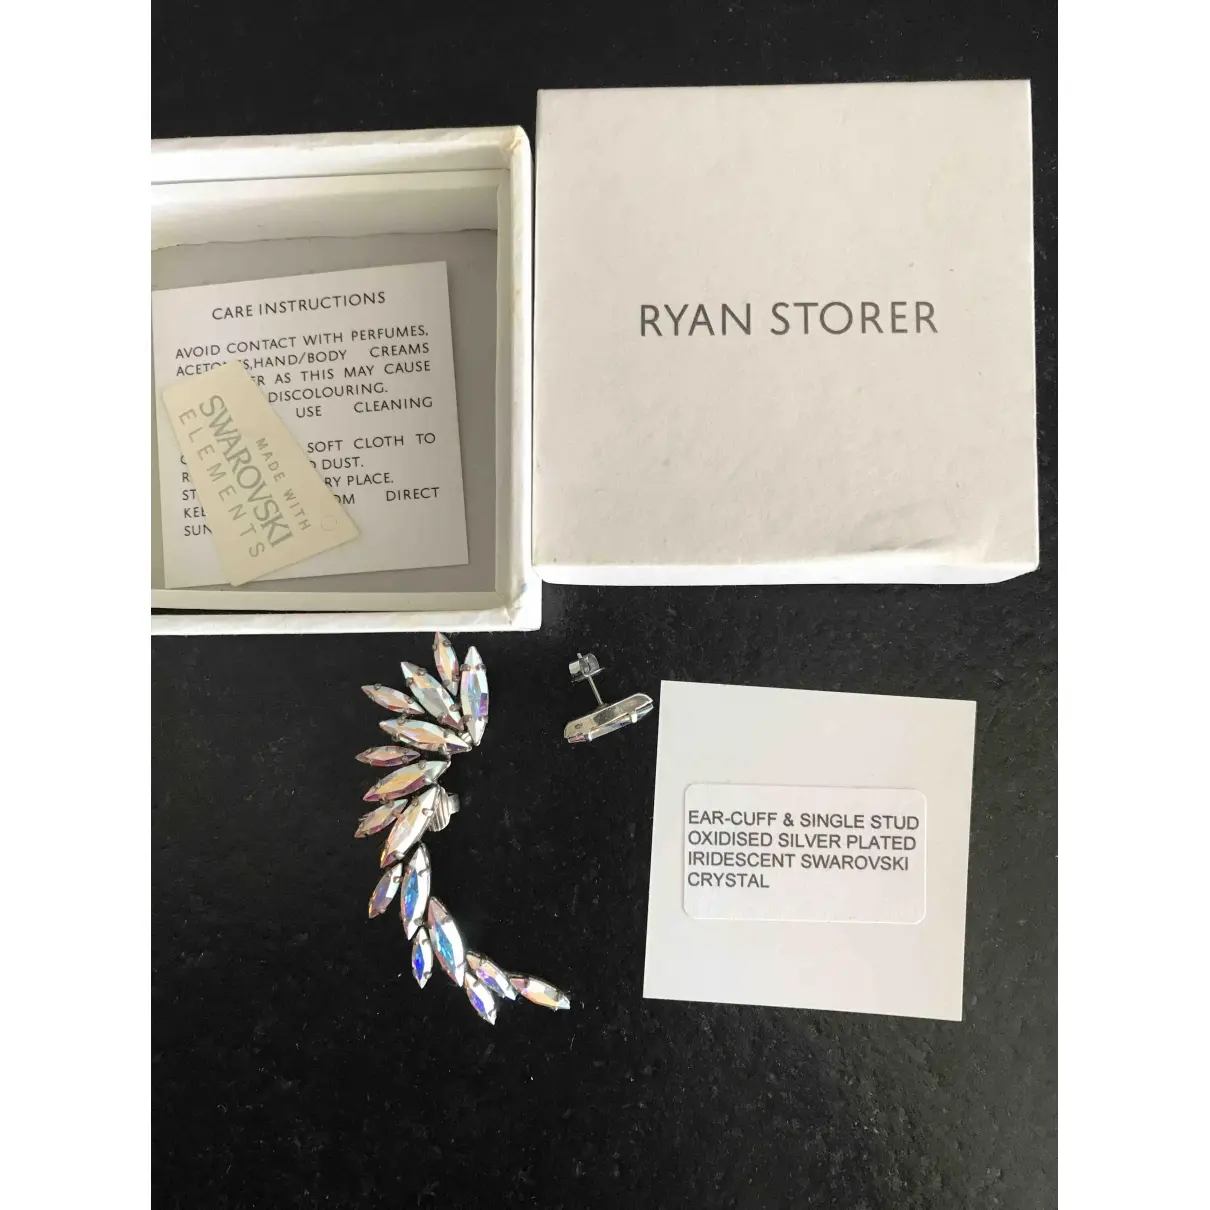 Ryan Storer Earrings for sale